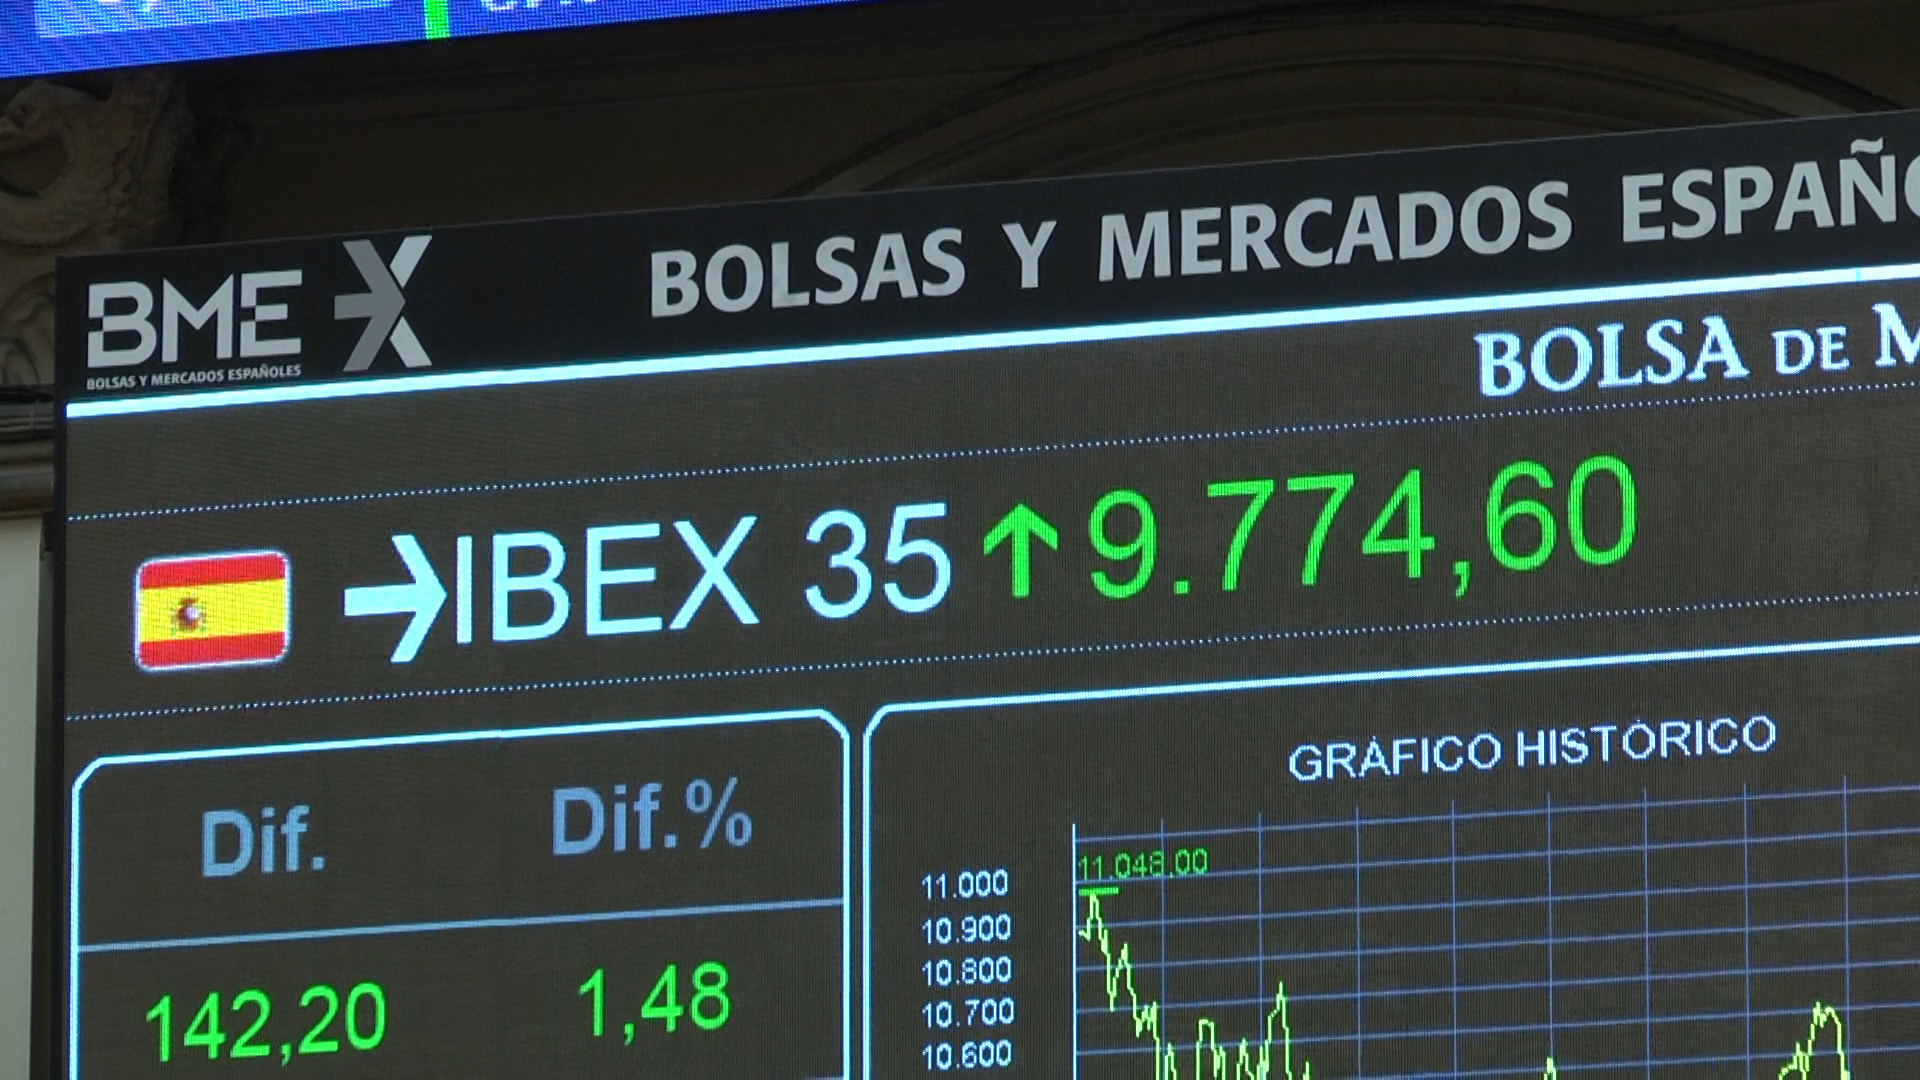 Panel del Ibex 35 en el Palacio de la bolsa de Madrid